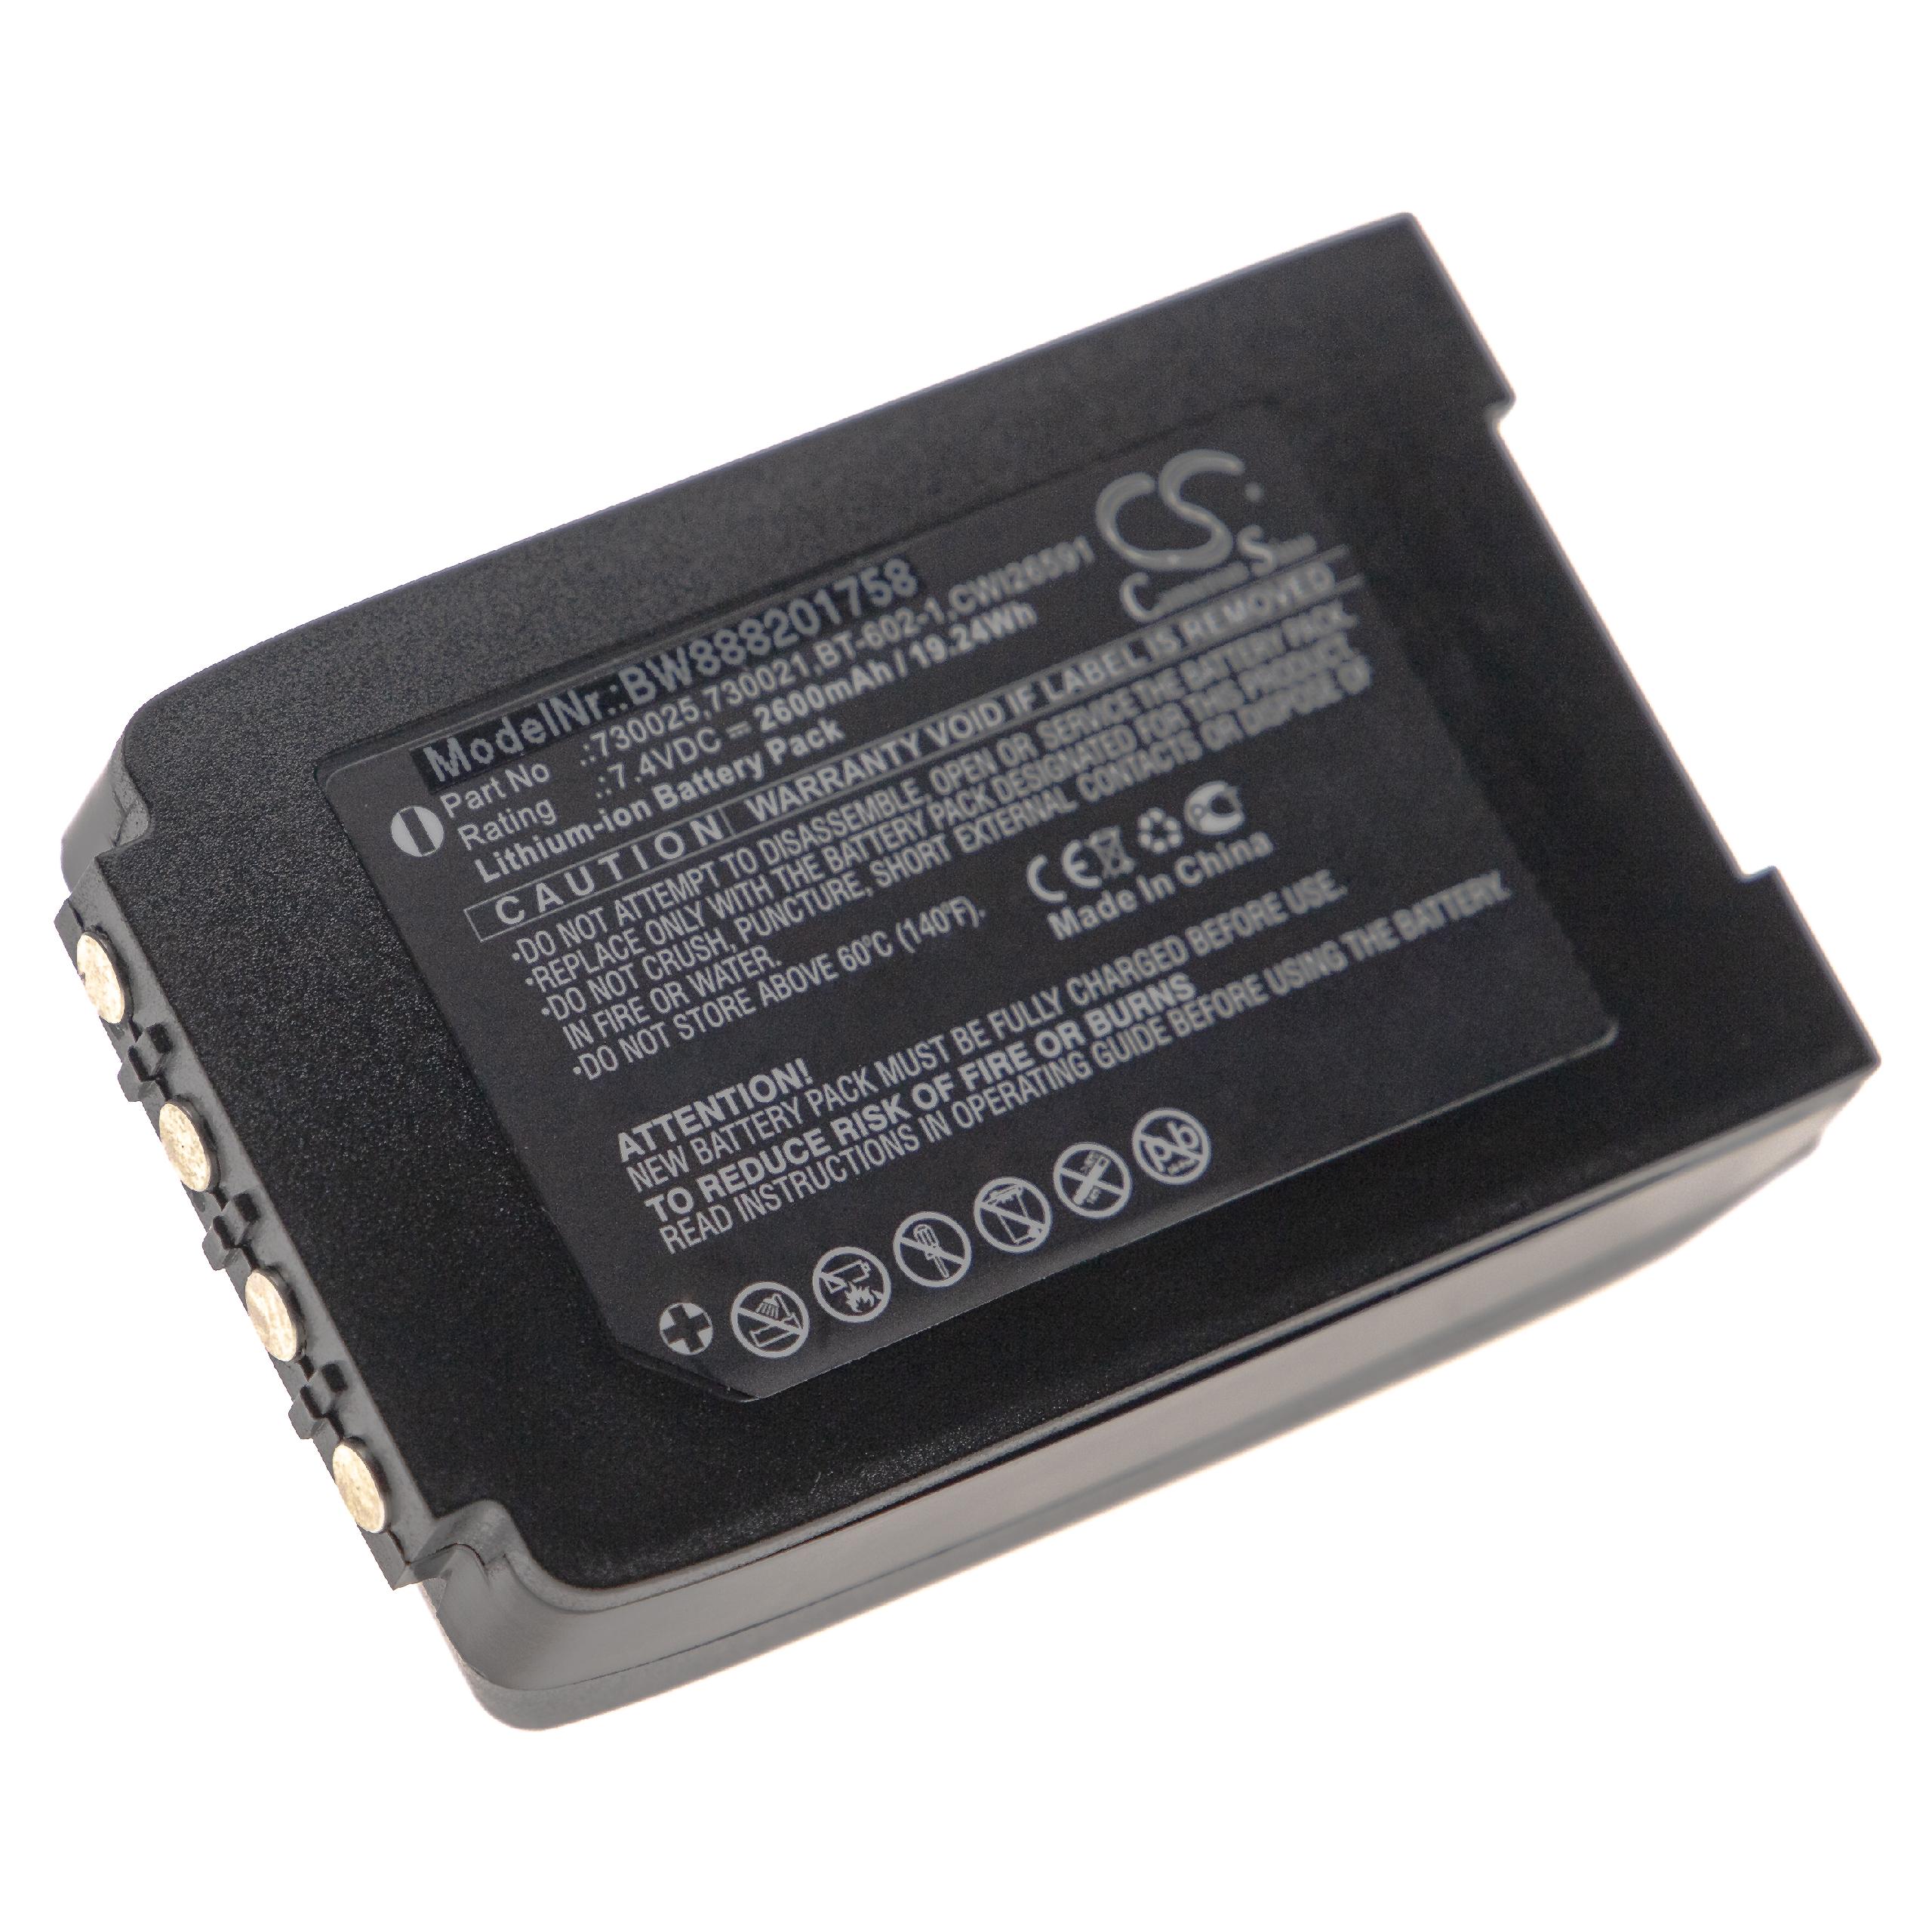 Batterie remplace VoCollect CWI26591, 730021, 730025, BT-602-1 pour radio talkie-walkie - 2600mAh 7,4V Li-ion